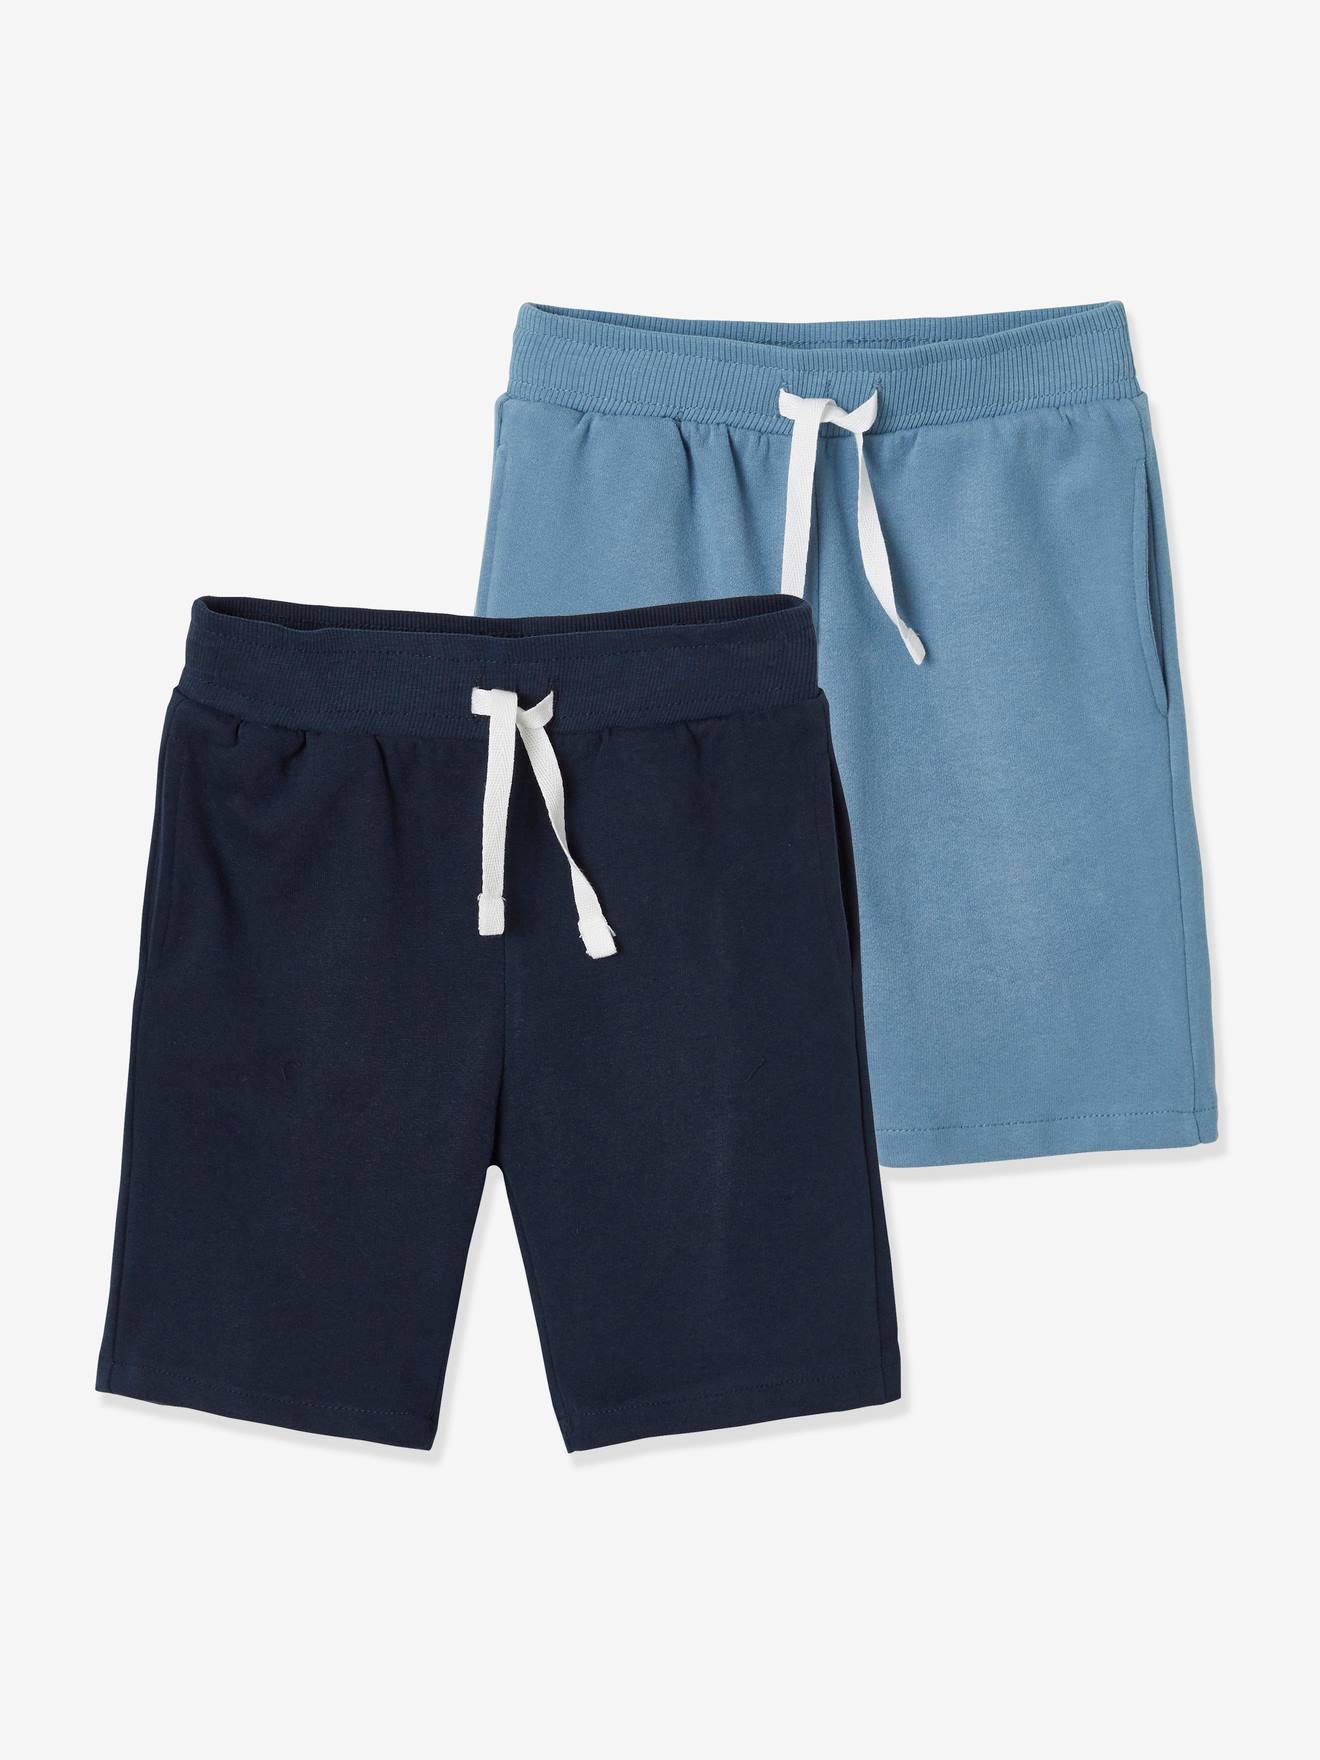 Shorts & Bermudas Jungen - - kaufen! für online vertbaudet jetzt